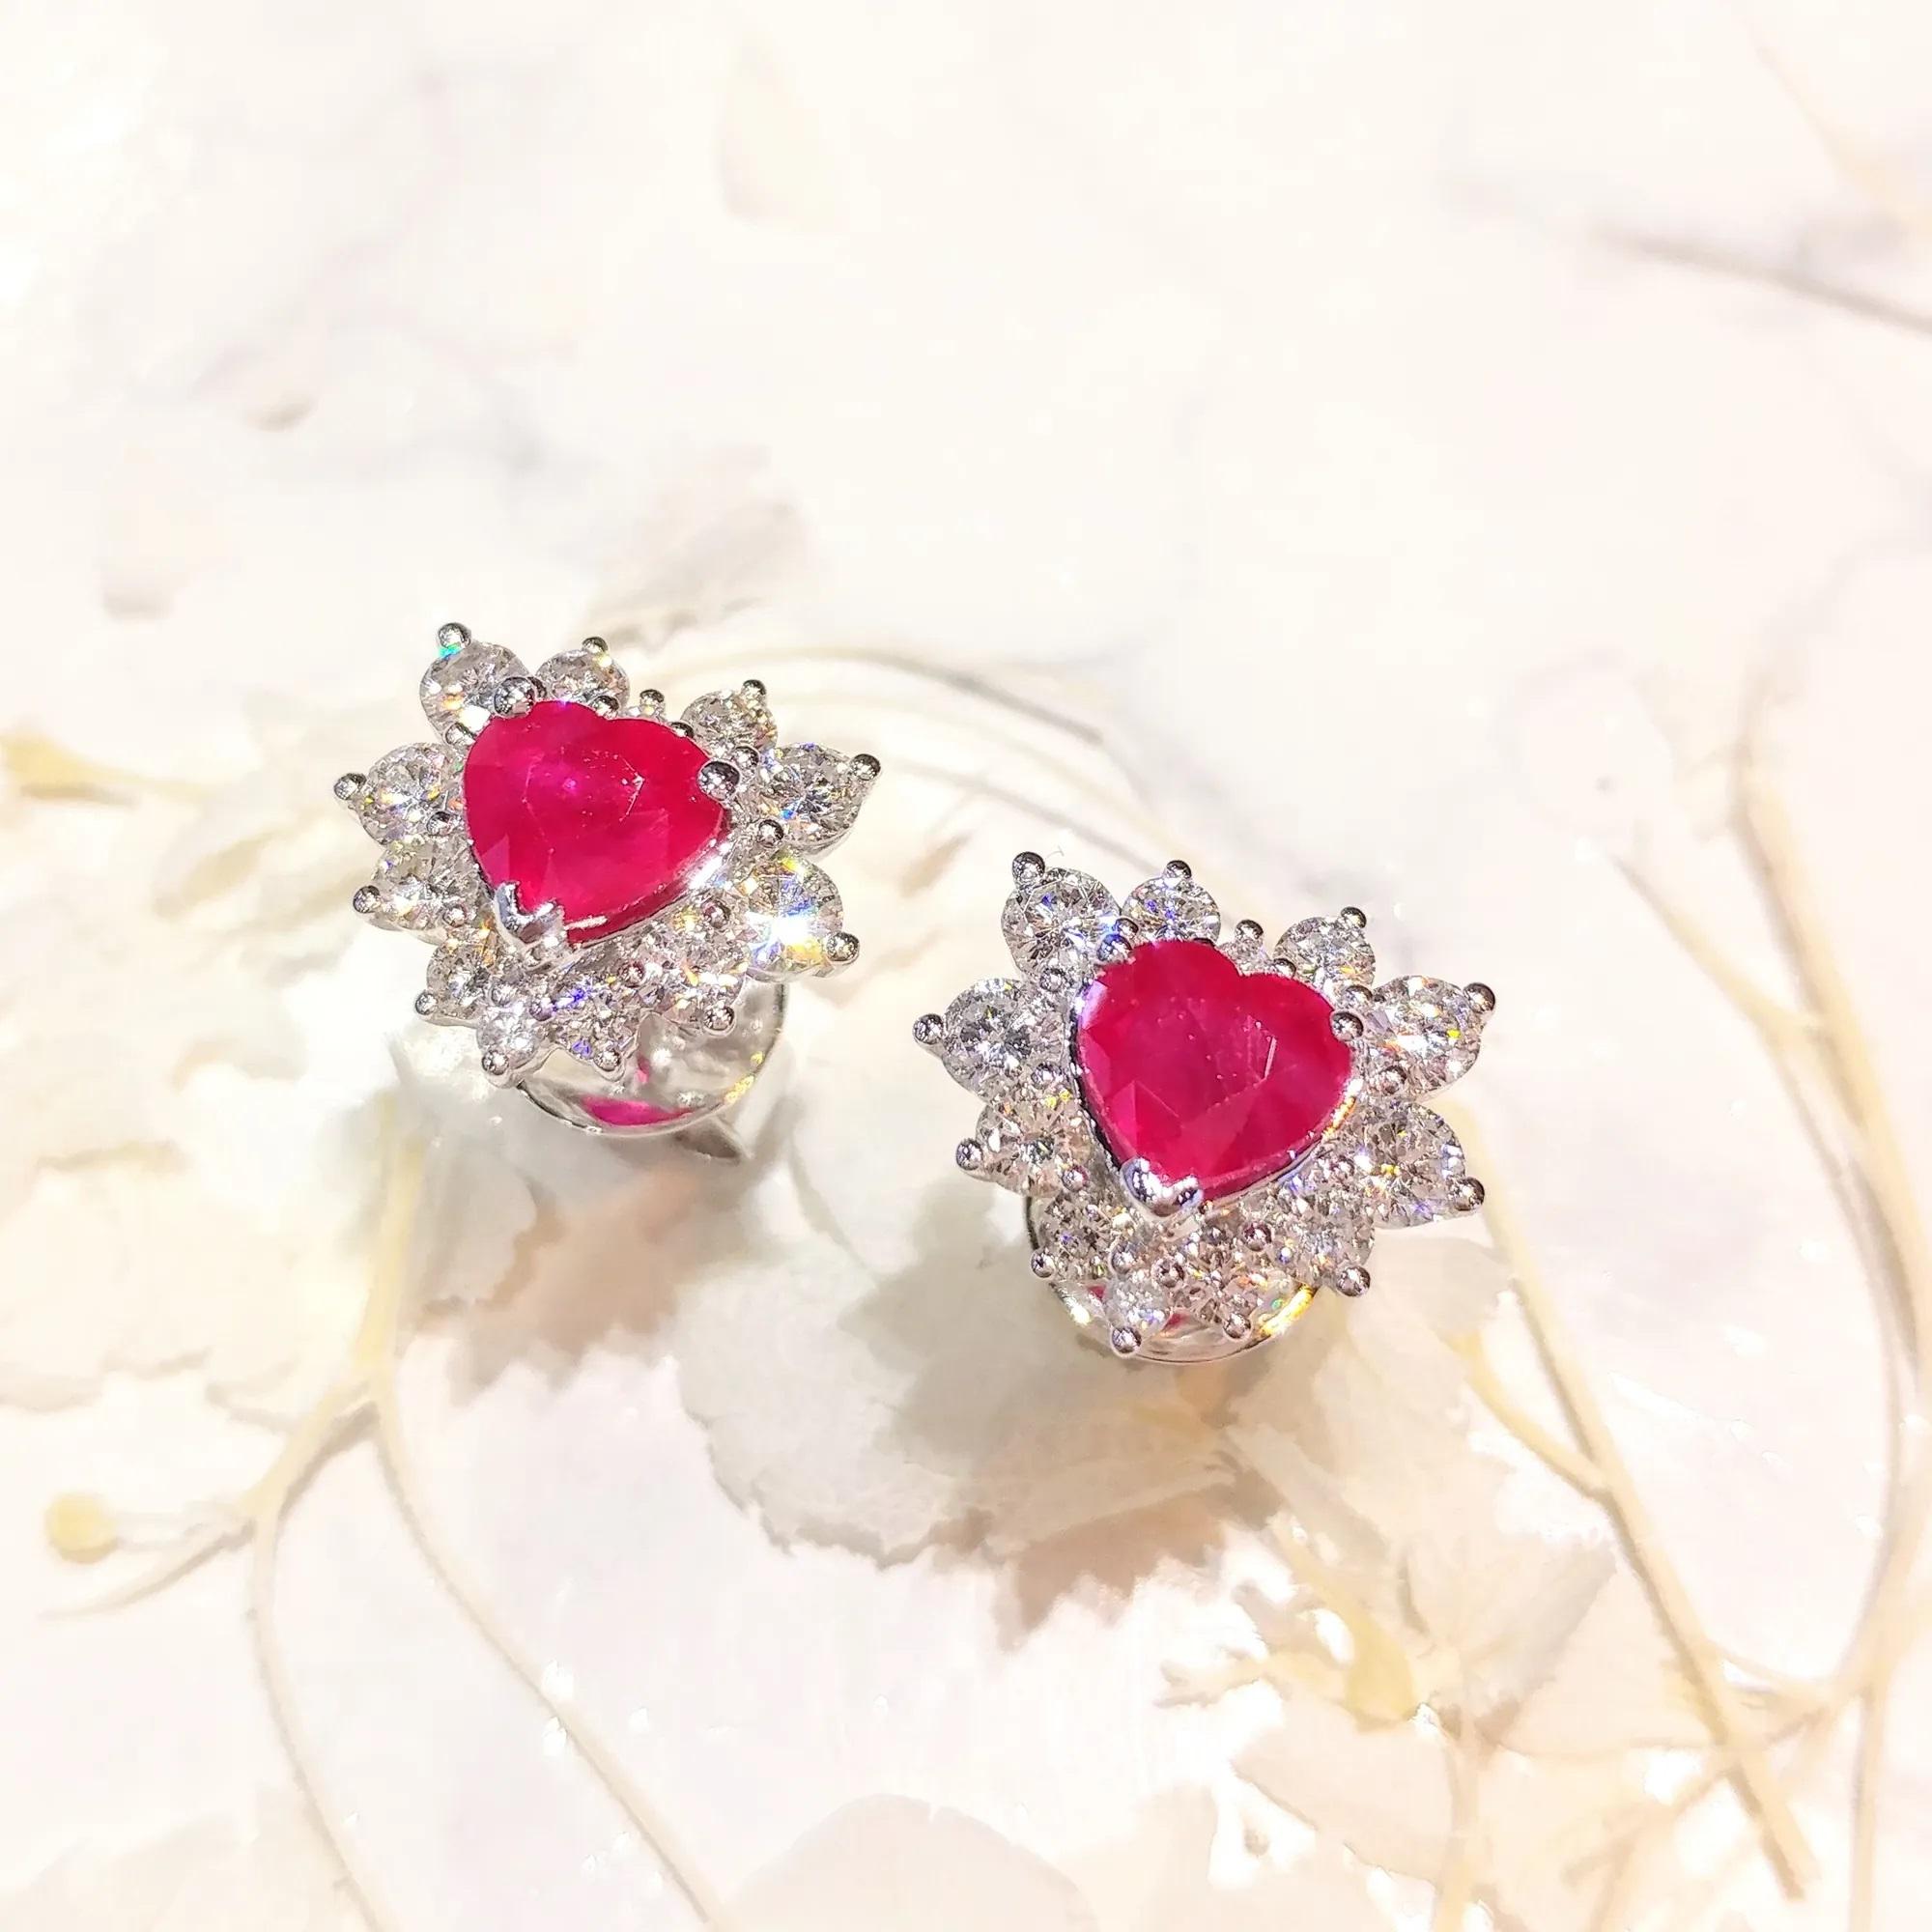 IGI Certified 2.23 Carat Ruby & 1.30 Carat Diamond Earrings in 18K White Gold For Sale 1